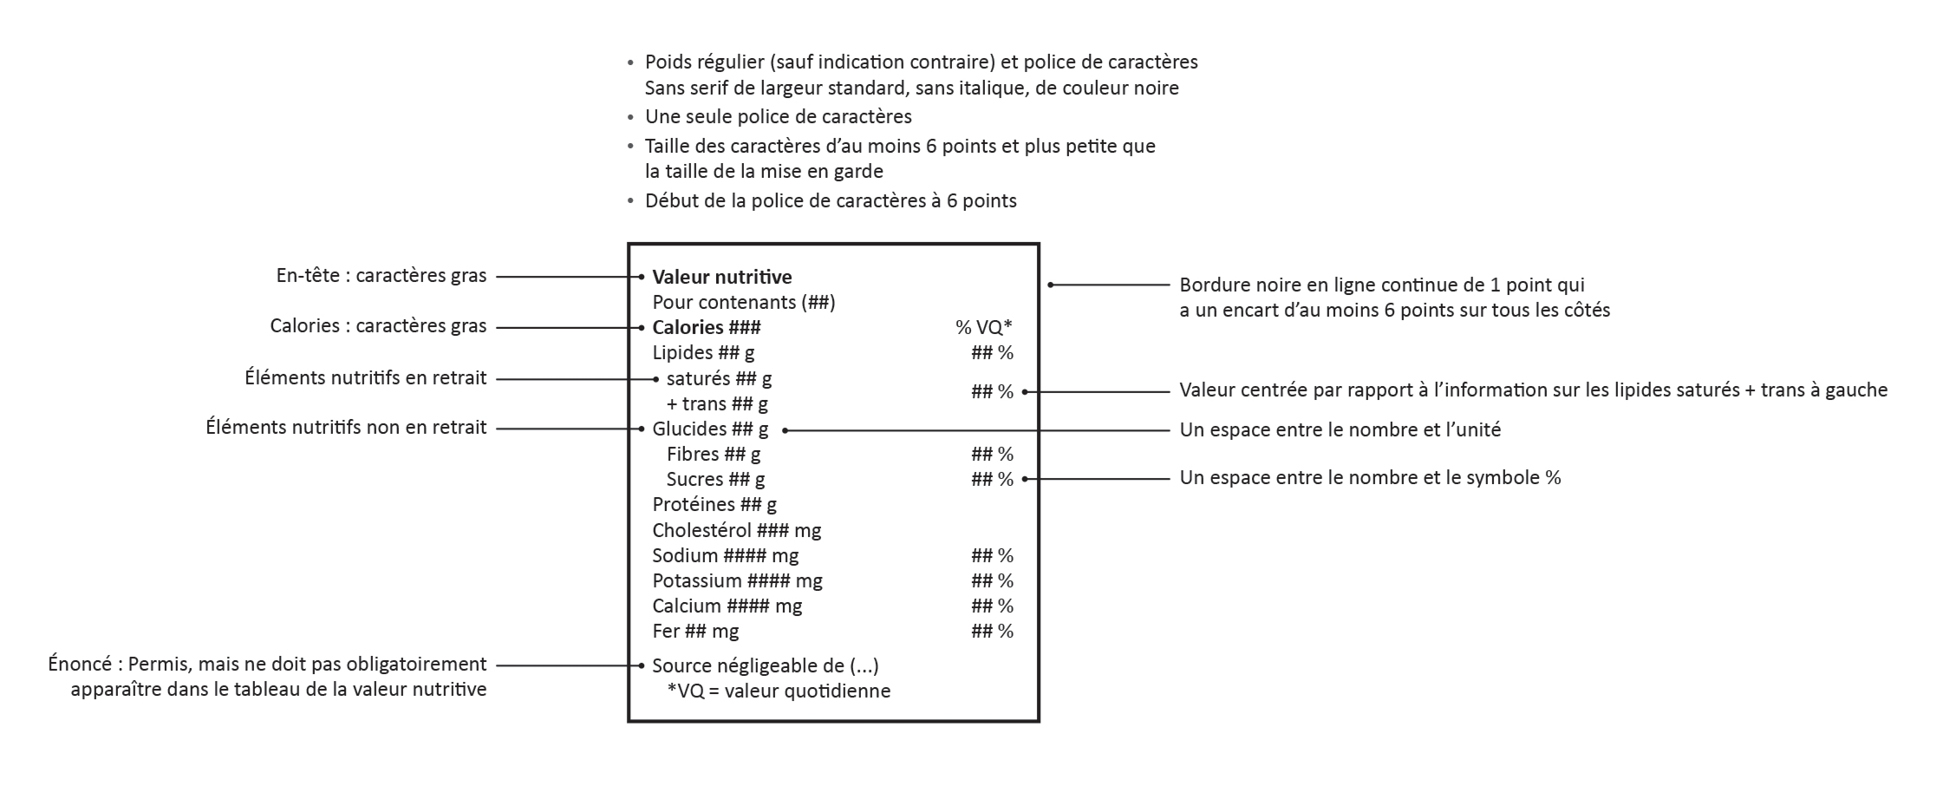 Figure 1. Tableau de la valeur nutritive (TVN) propre au cannabis proposé